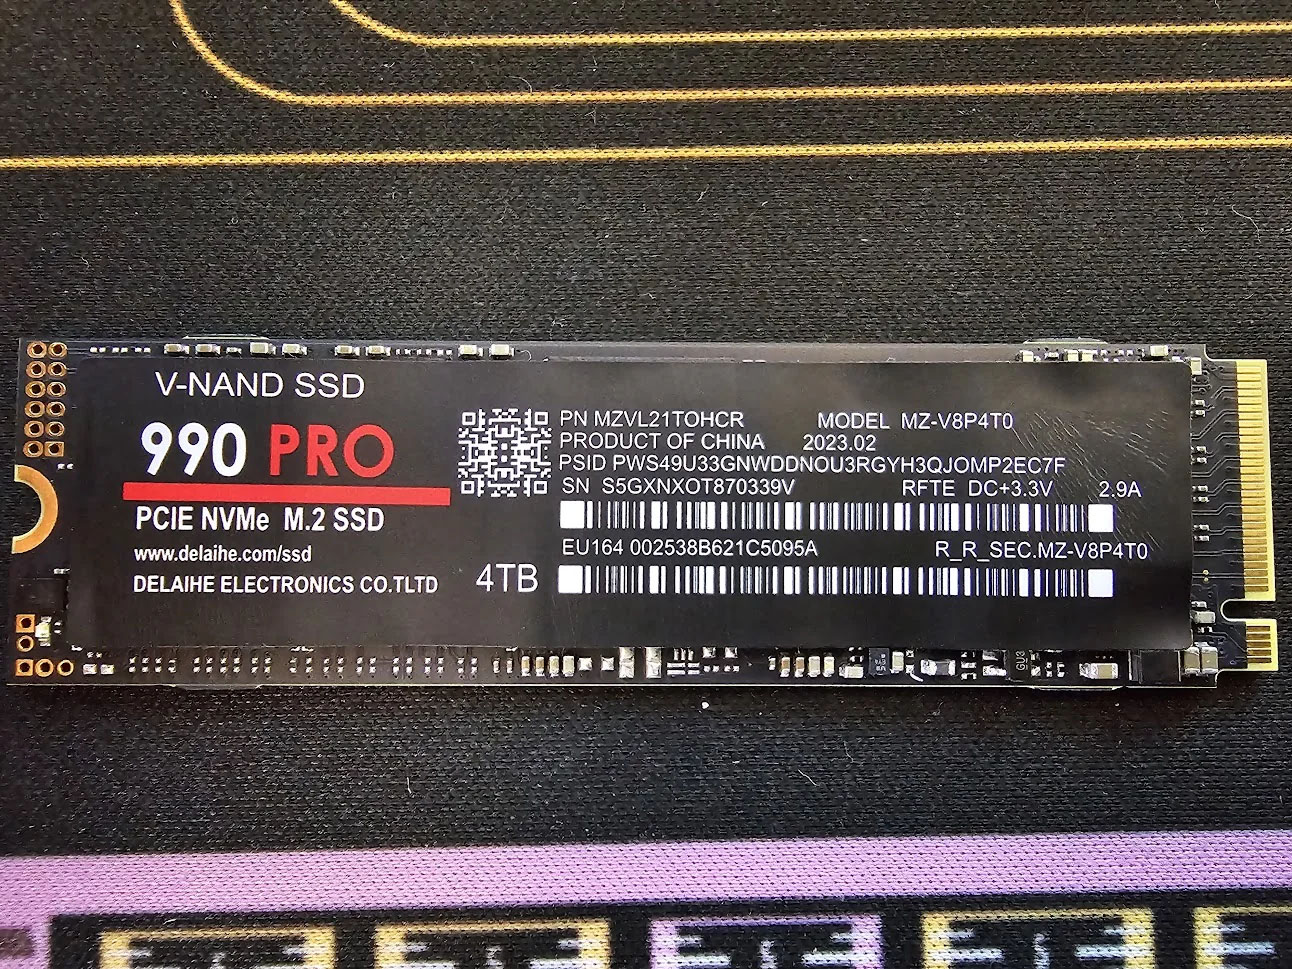 Xuất hiện SSD "990 Pro" giả, siêu rẻ nhưng cũng siêu chậm, anh em cẩn trọng